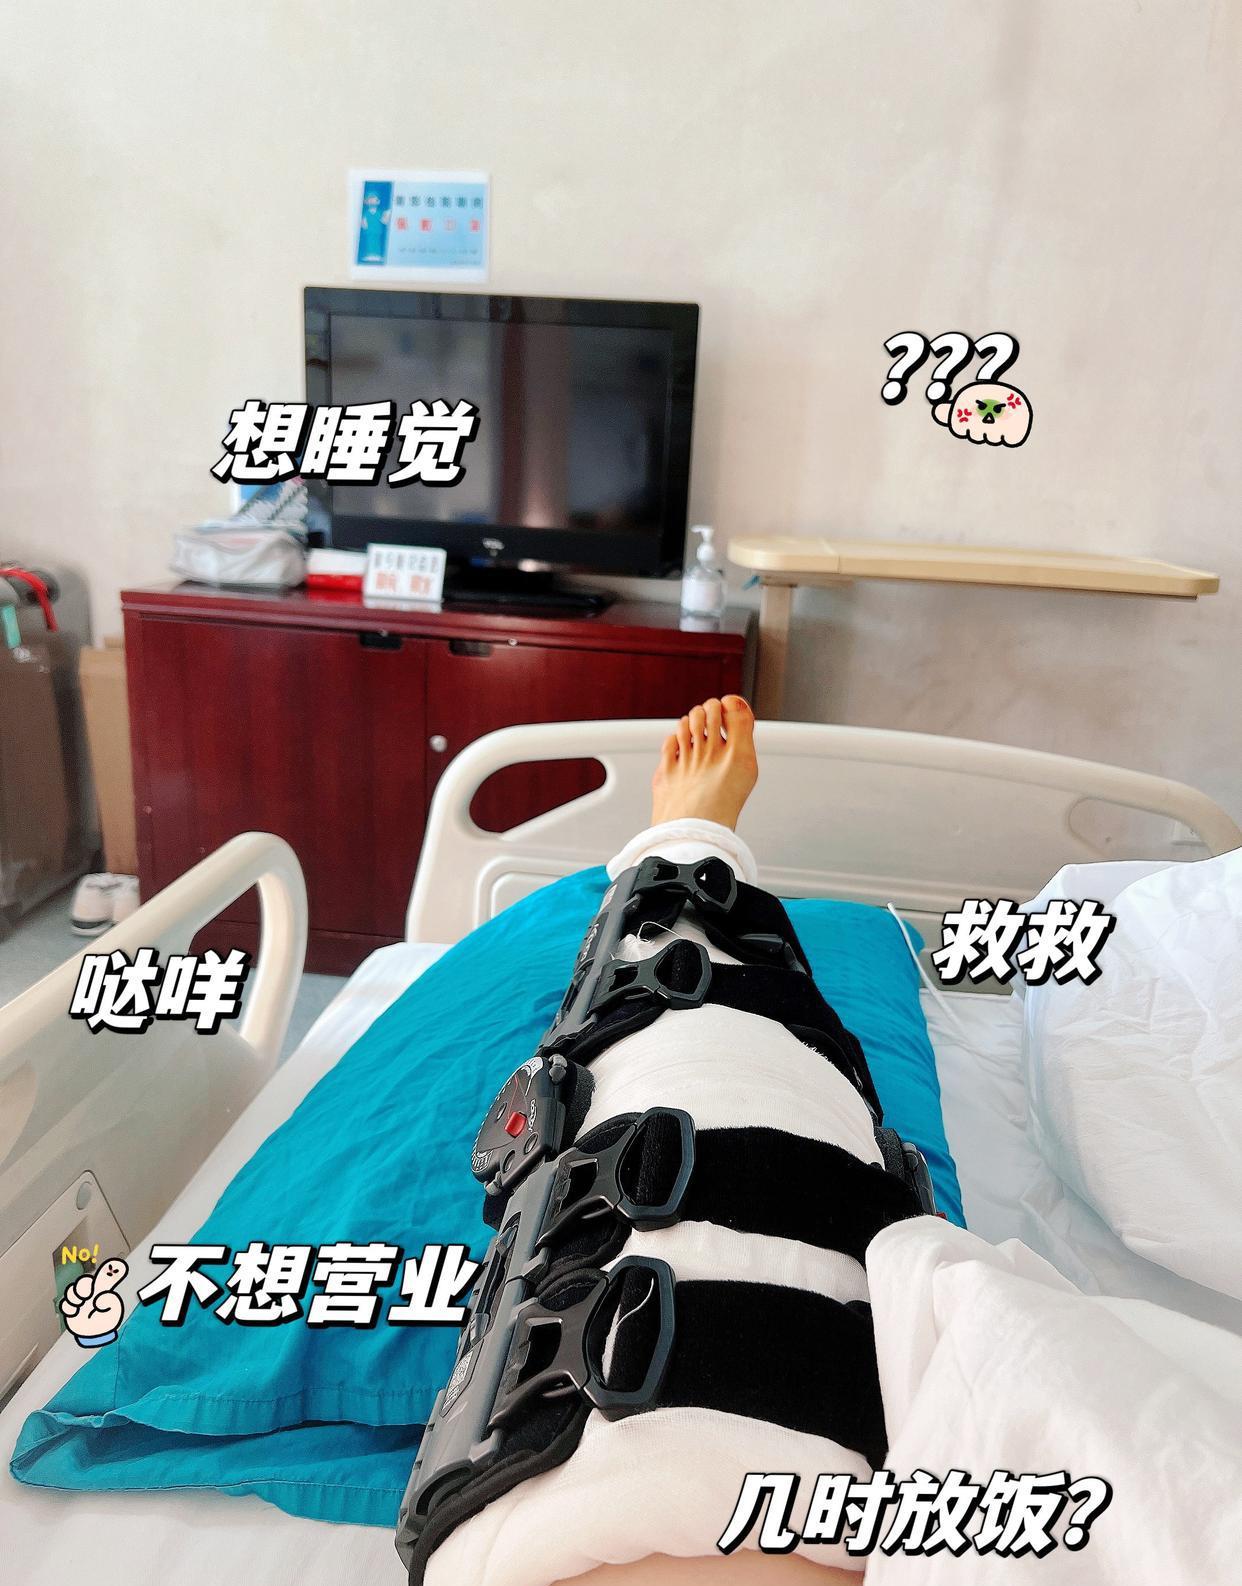 报平安！女篮亚军武桐桐宣布左膝手术成功：很快就活蹦乱跳 球场见！(5)